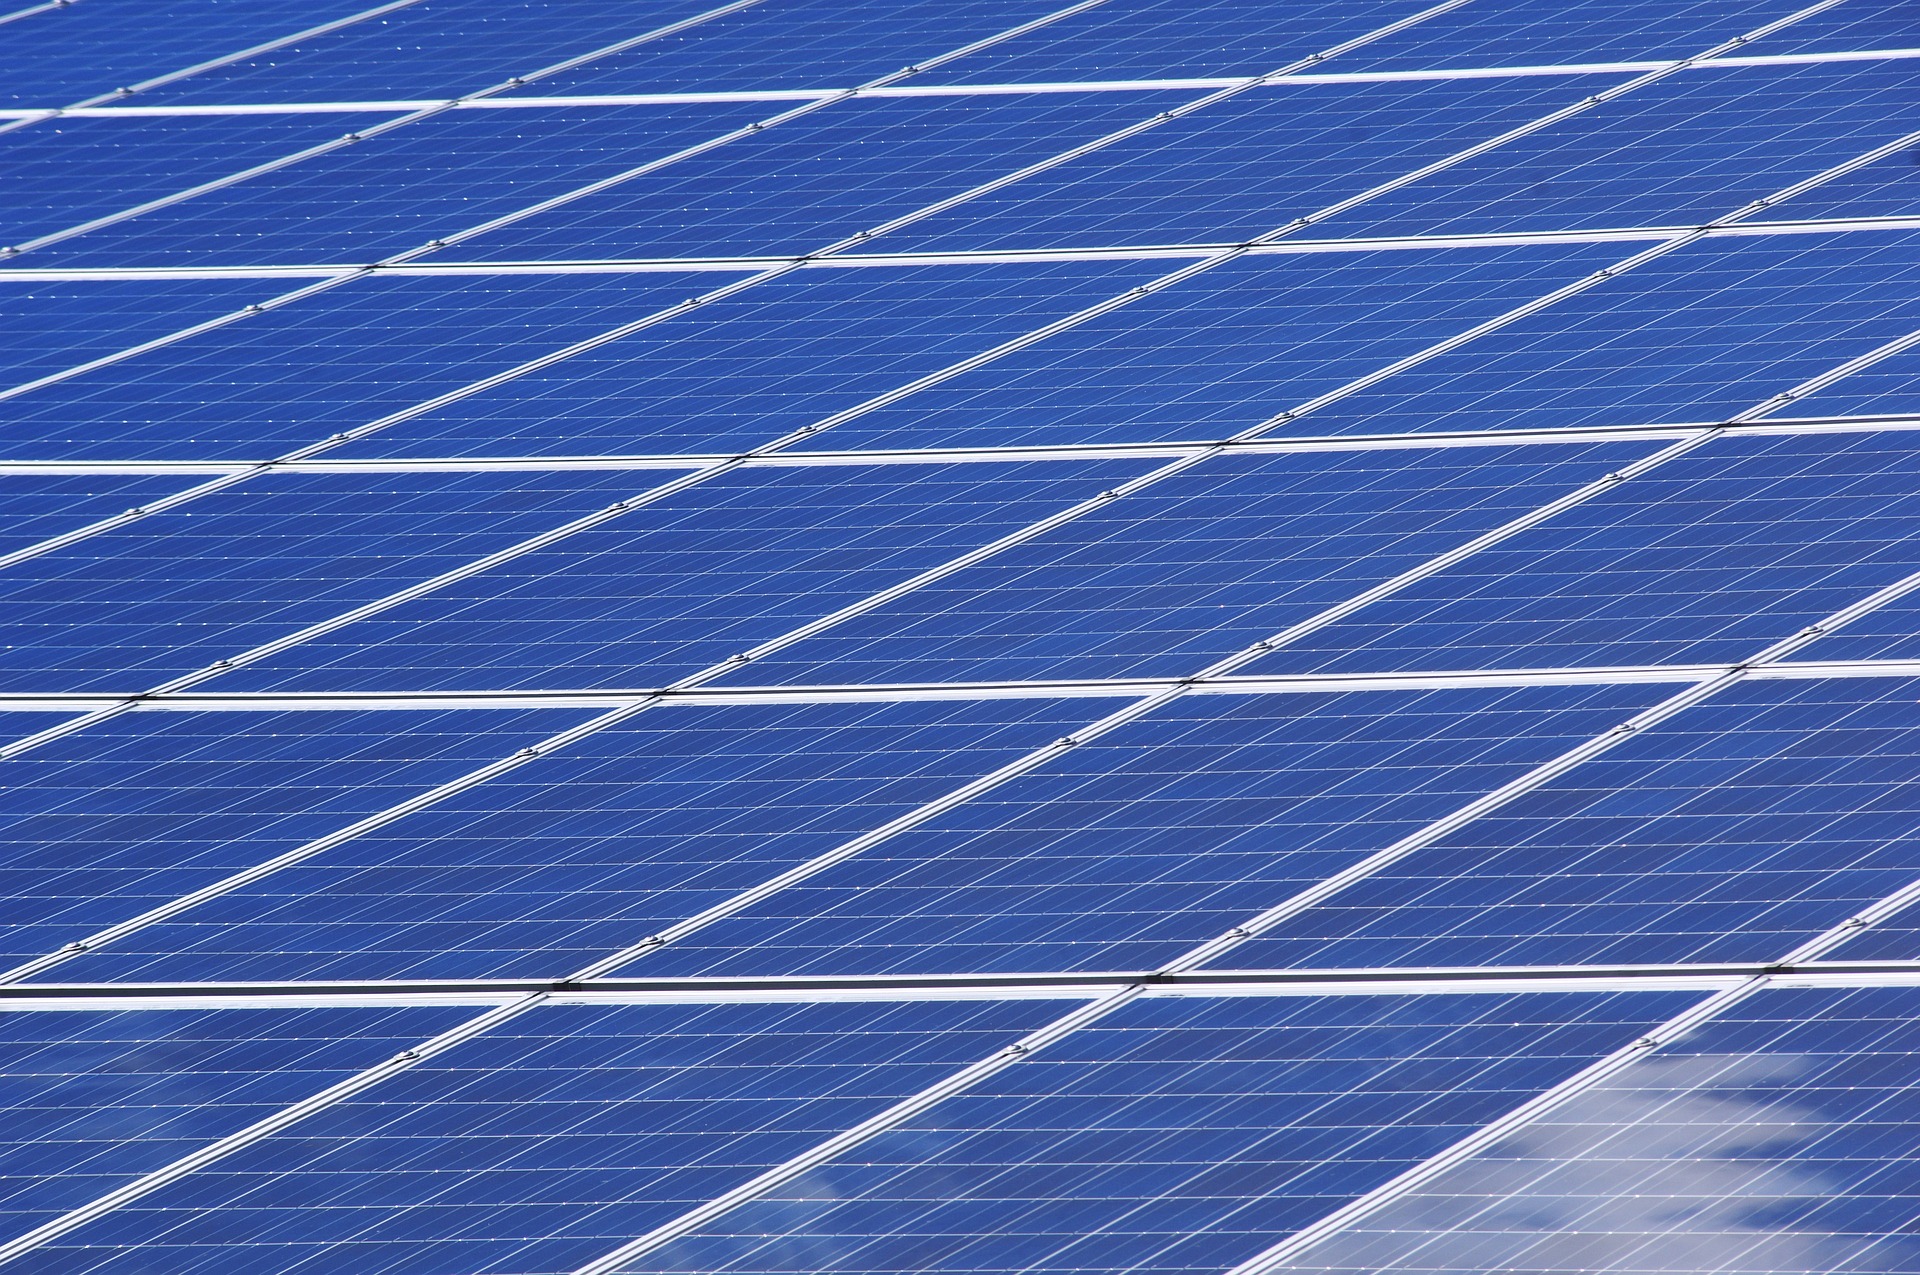 Setor fotovoltaico - Elysia energia solar Porto Alegre